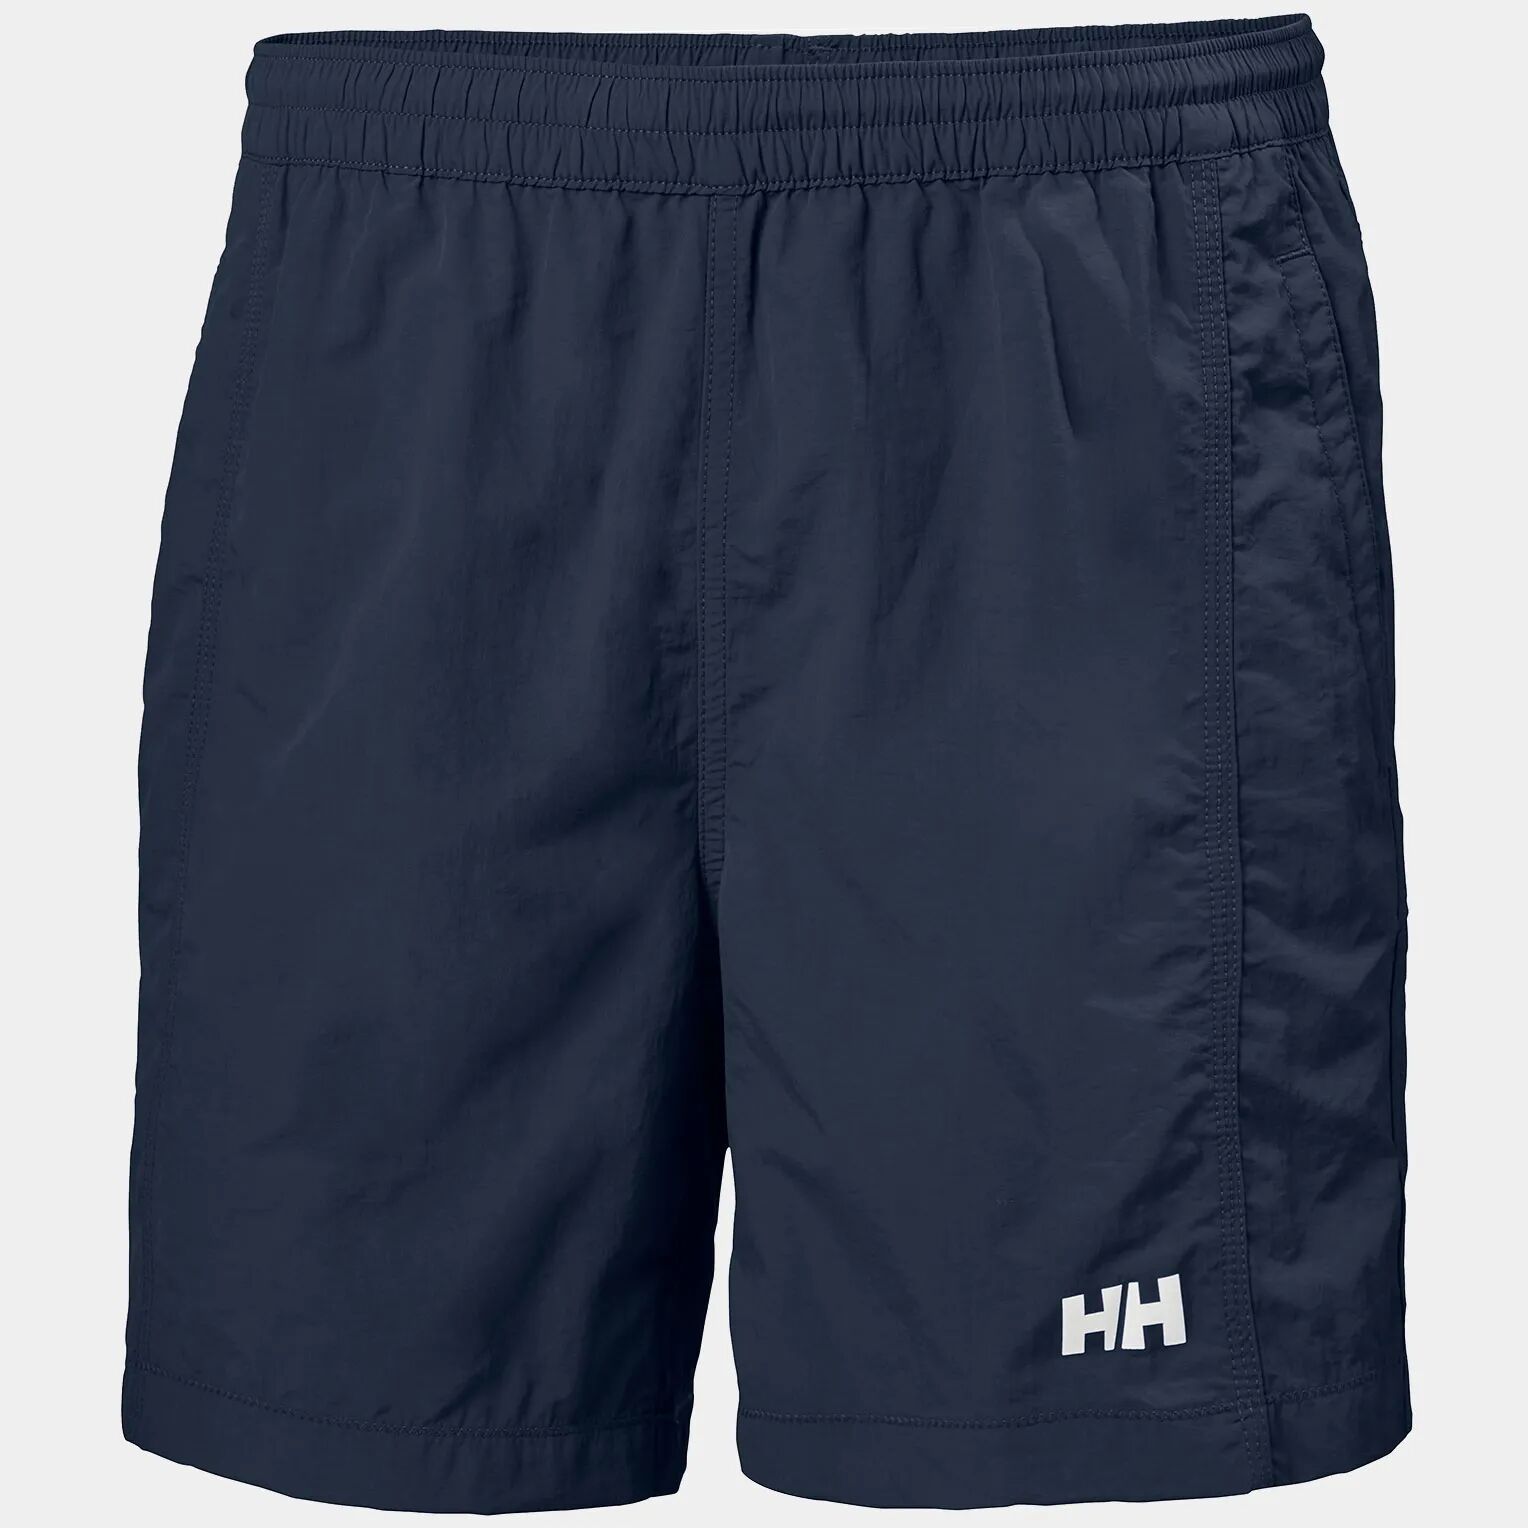 Helly Hansen Men's Calshot Quick-Dry Swimming Trunks Navy M - Navy Blue - Male